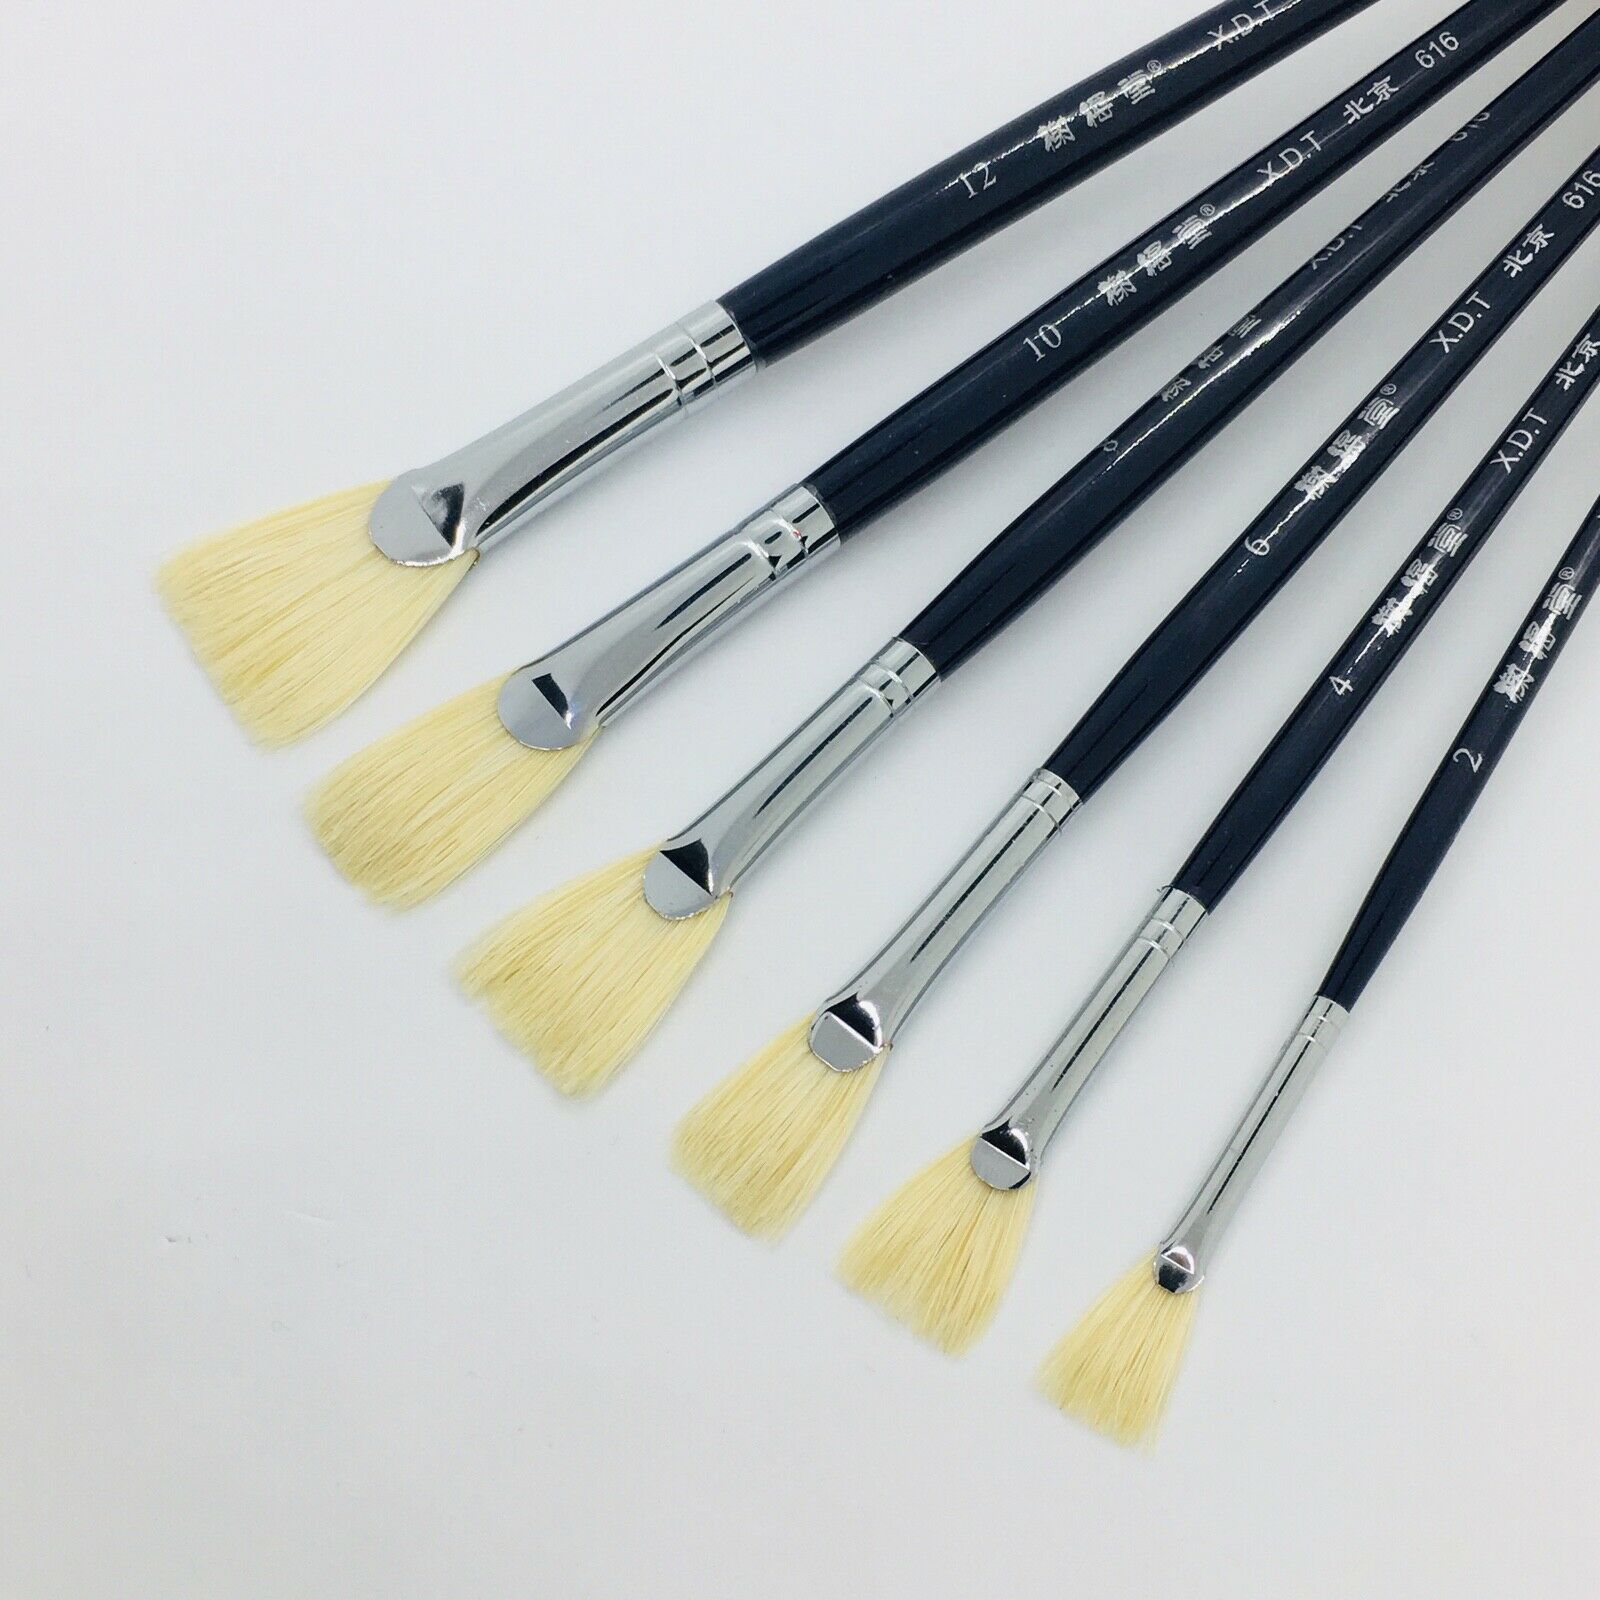 Xdt#616 Fan Artist Paint Brush Art Brushes 6pc Hog Bristle Acrylic Watercolor